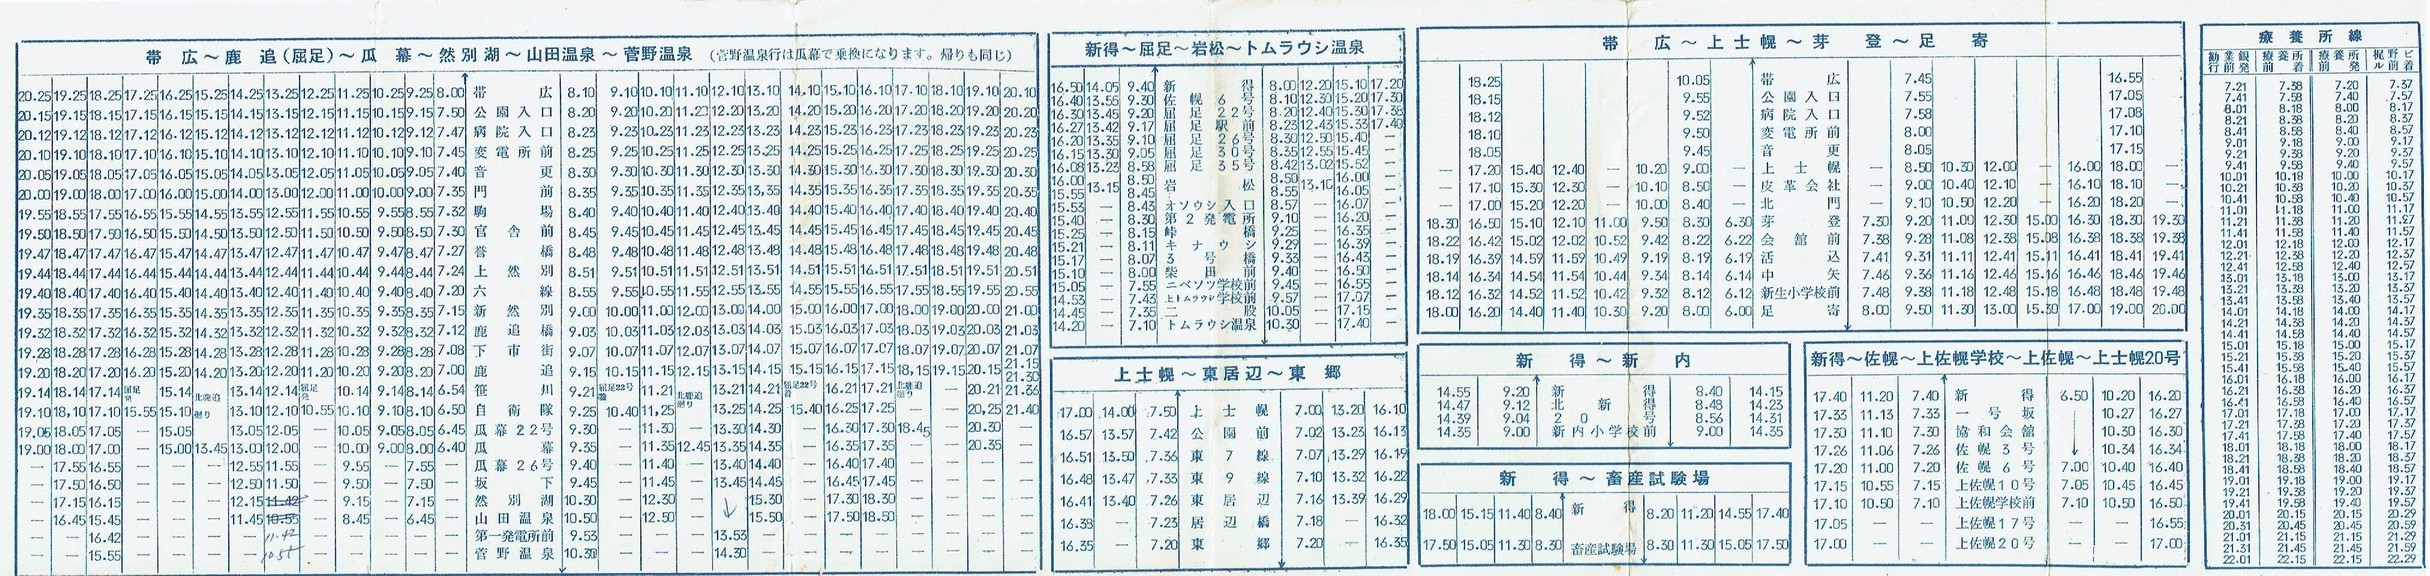 1965-05-01改正_北海道拓殖バス_時刻表裏面